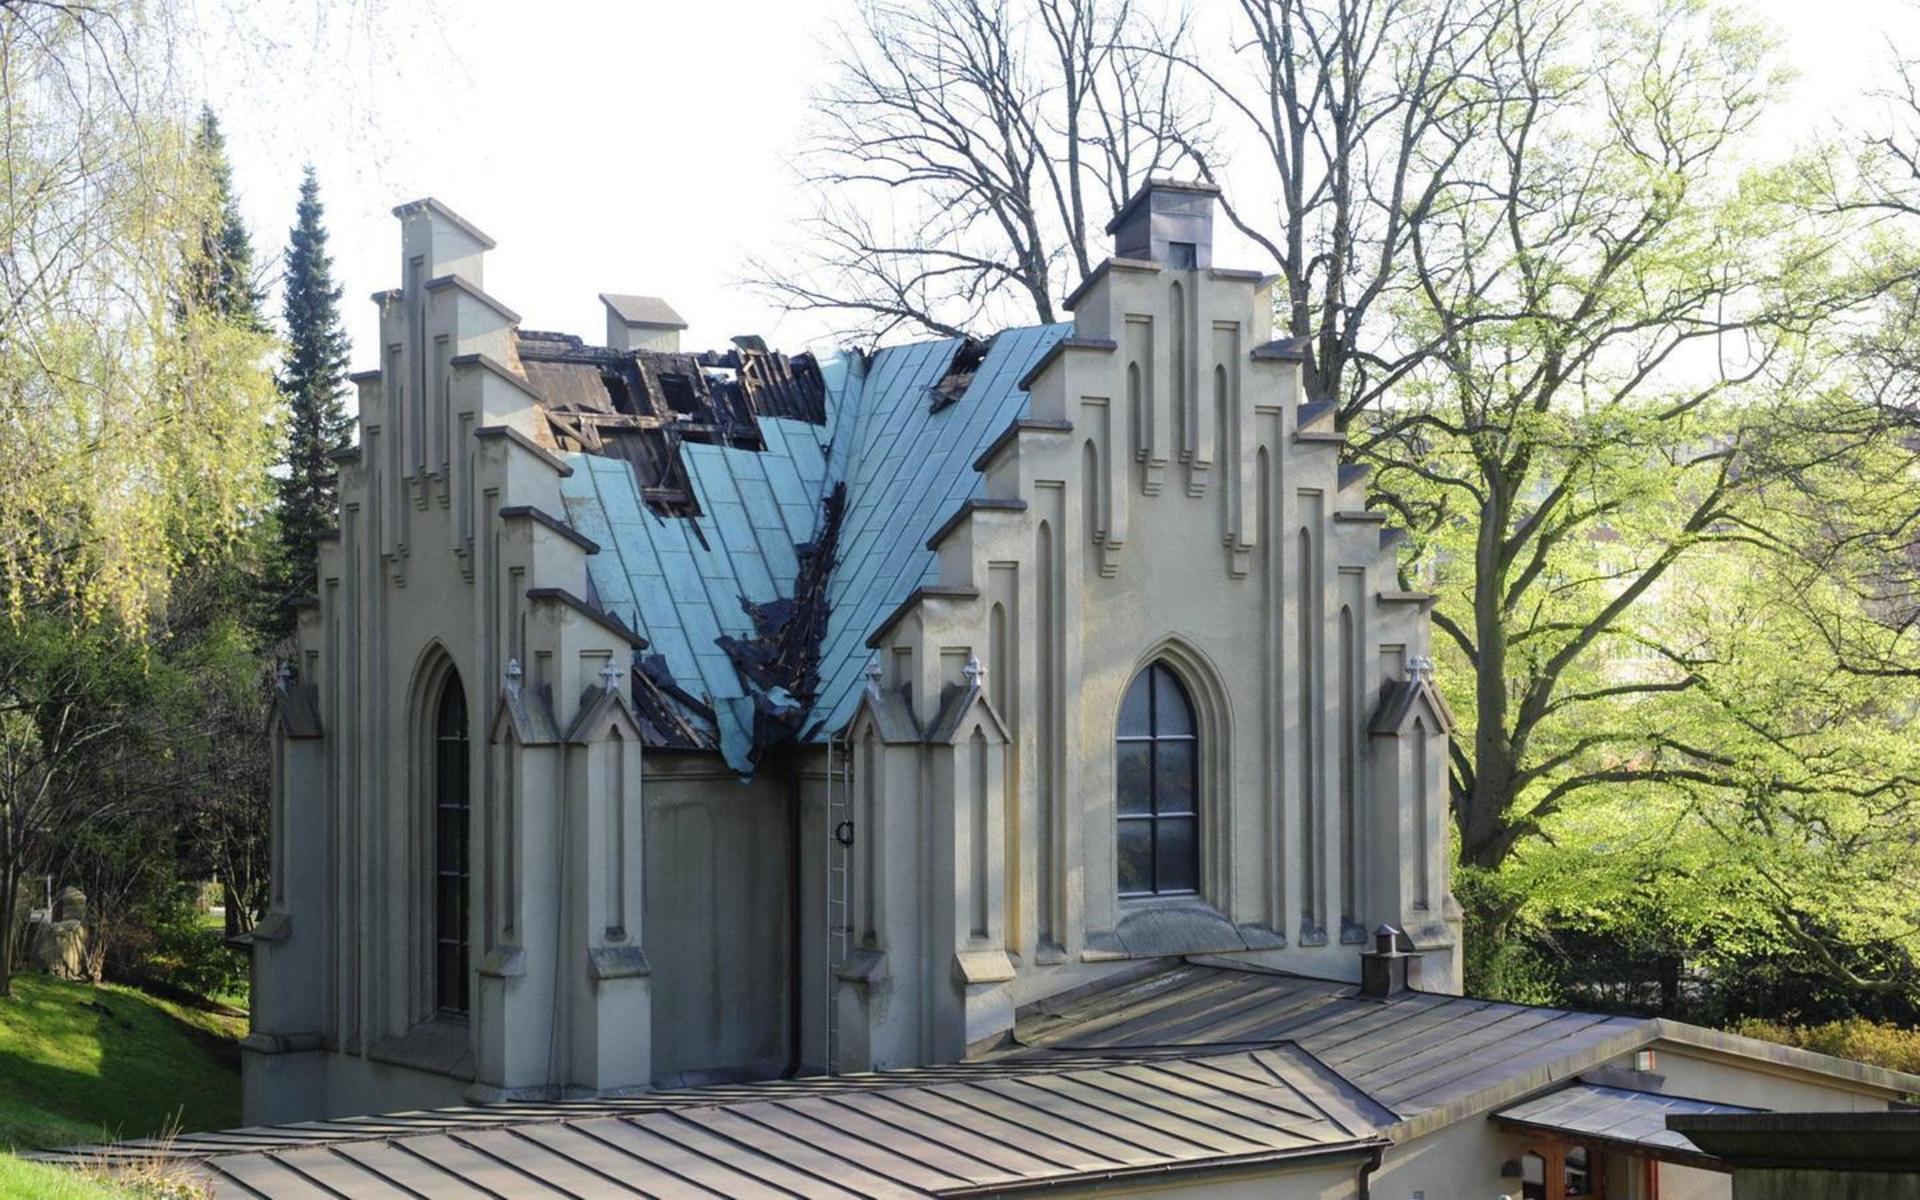 Deras arbete gav resultat: kapellet stod kvar, om än skadat. Under släckningsarbetet slog man sönder kapellets tak med yxa.